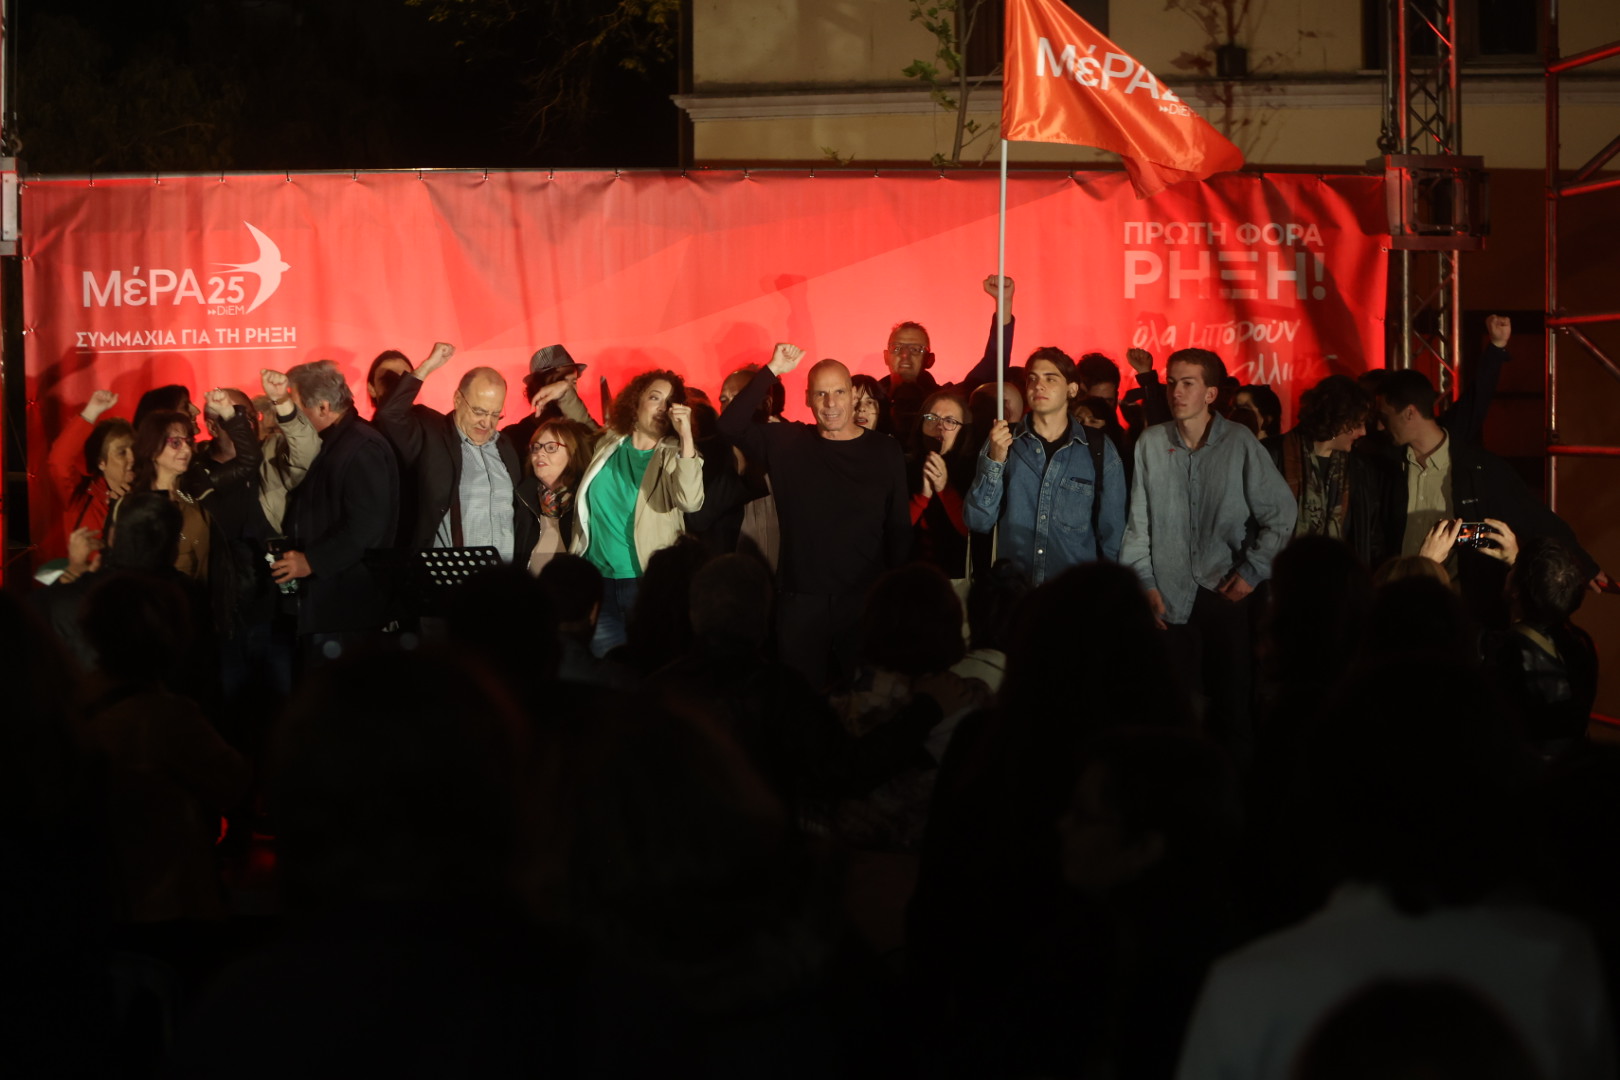 Ο Γ. Βαρουφάκης στην προεκλογική εκδήλωση της Νεολαίας του ΜέΡΑ25 – Συμμαχία για τη Ρήξη στο Μεταξουργείο